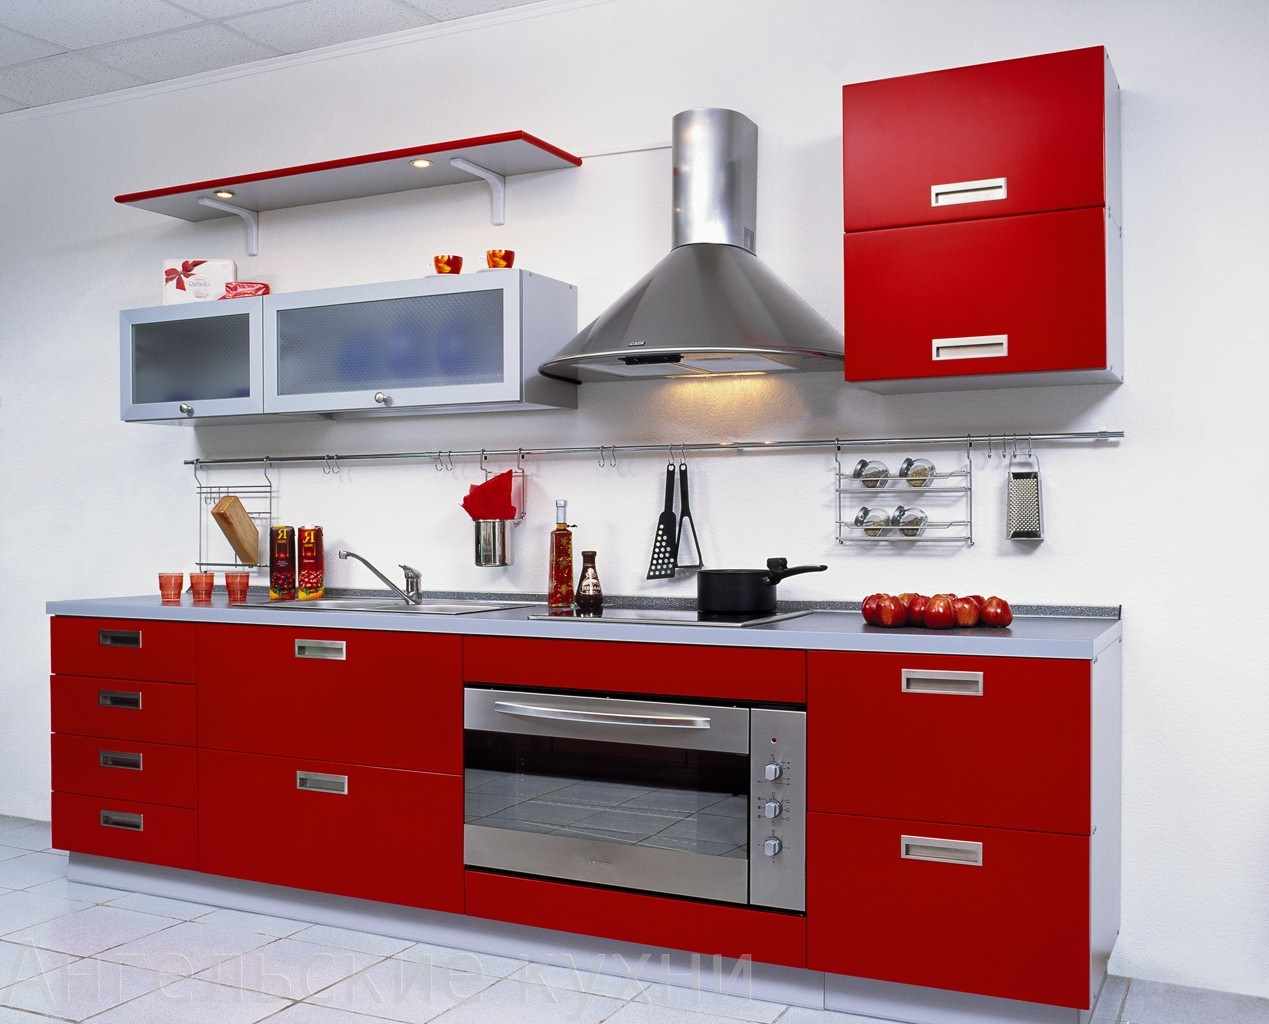 một ví dụ về thiết kế khác thường của nhà bếp màu đỏ